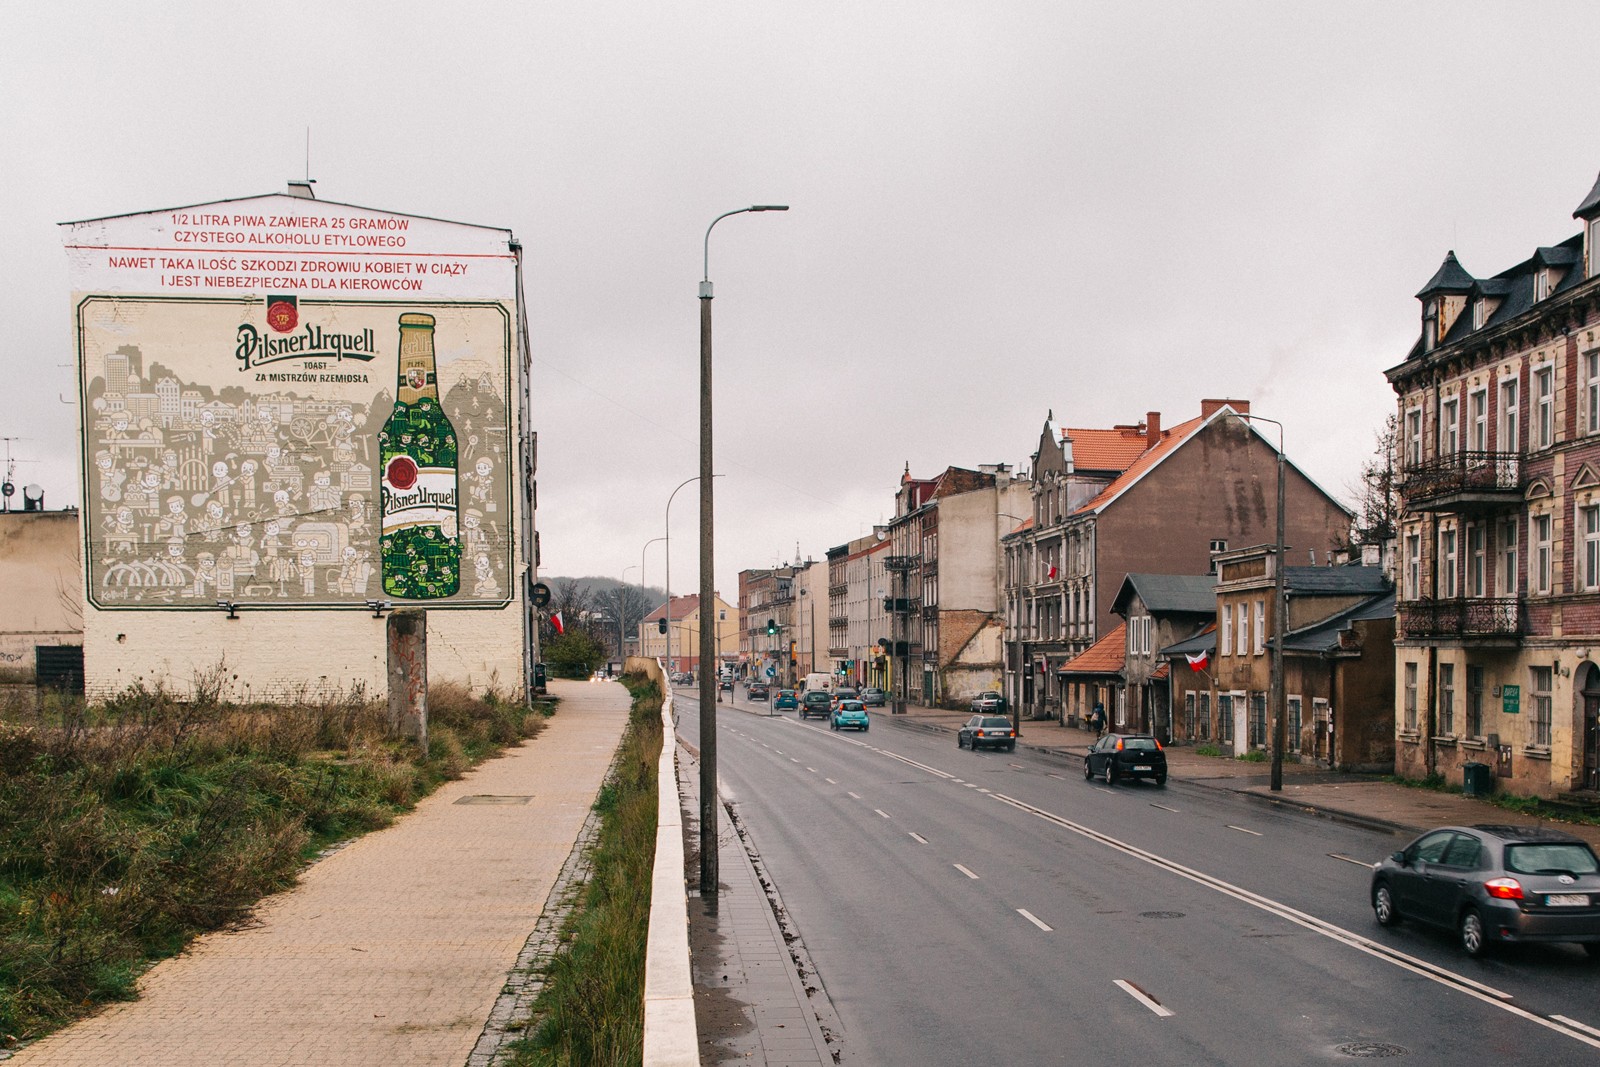 Mural reklamowy w Gdańsku trakt świętego Wojciecha dla Kompani Piwowarskiej  | Pilsner Urquell | Portfolio